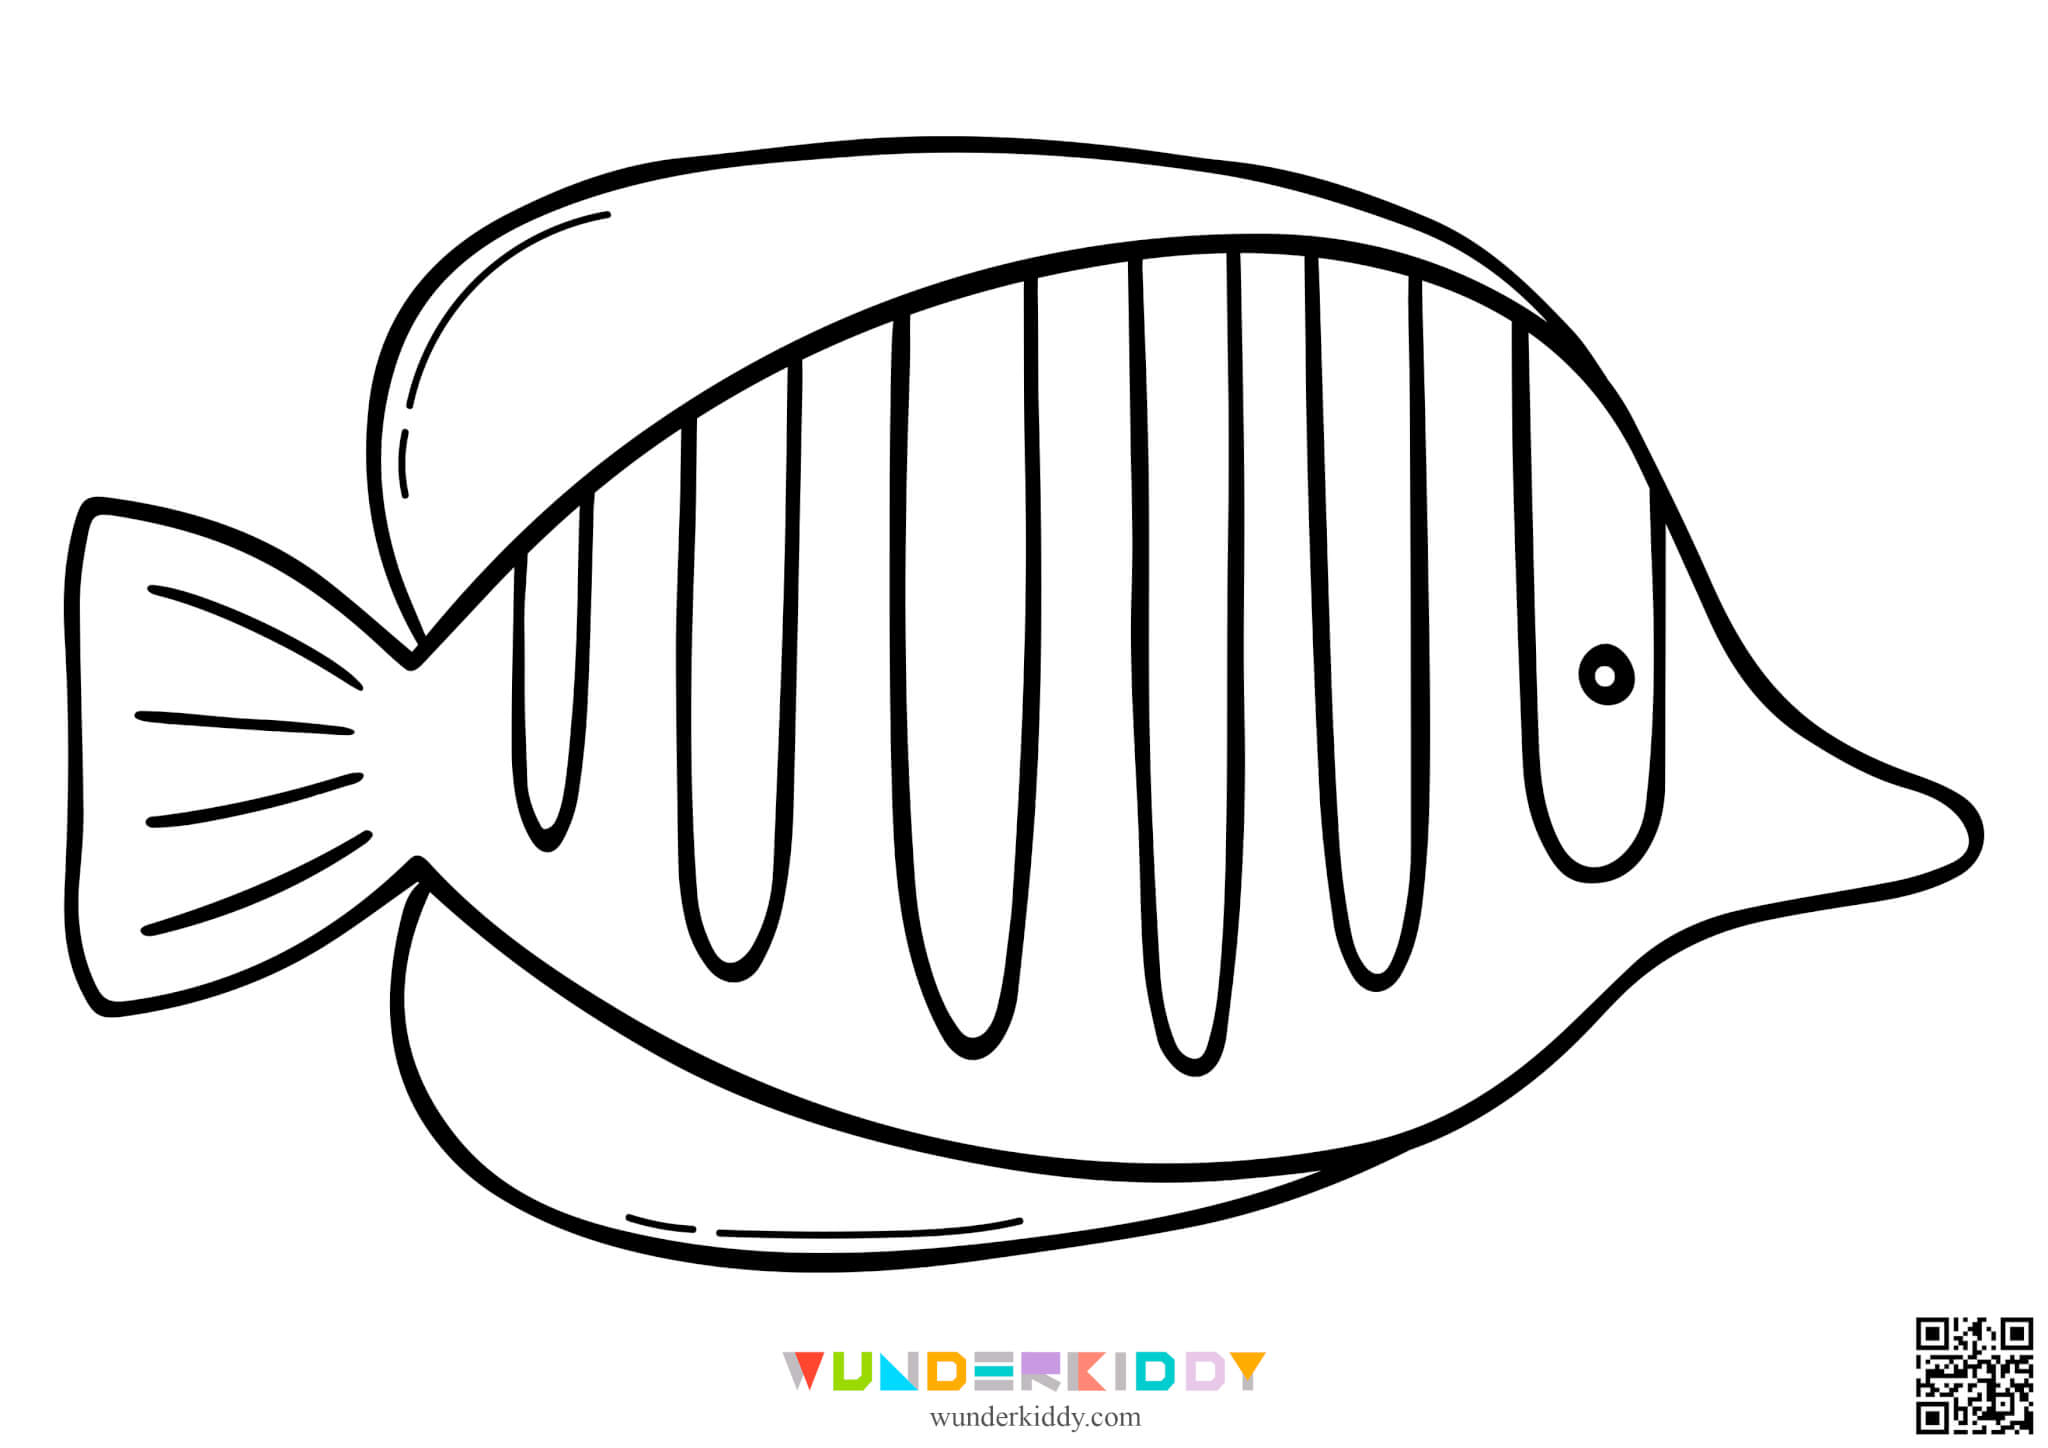 Раскраски Рыбы для детей - Изображение 6